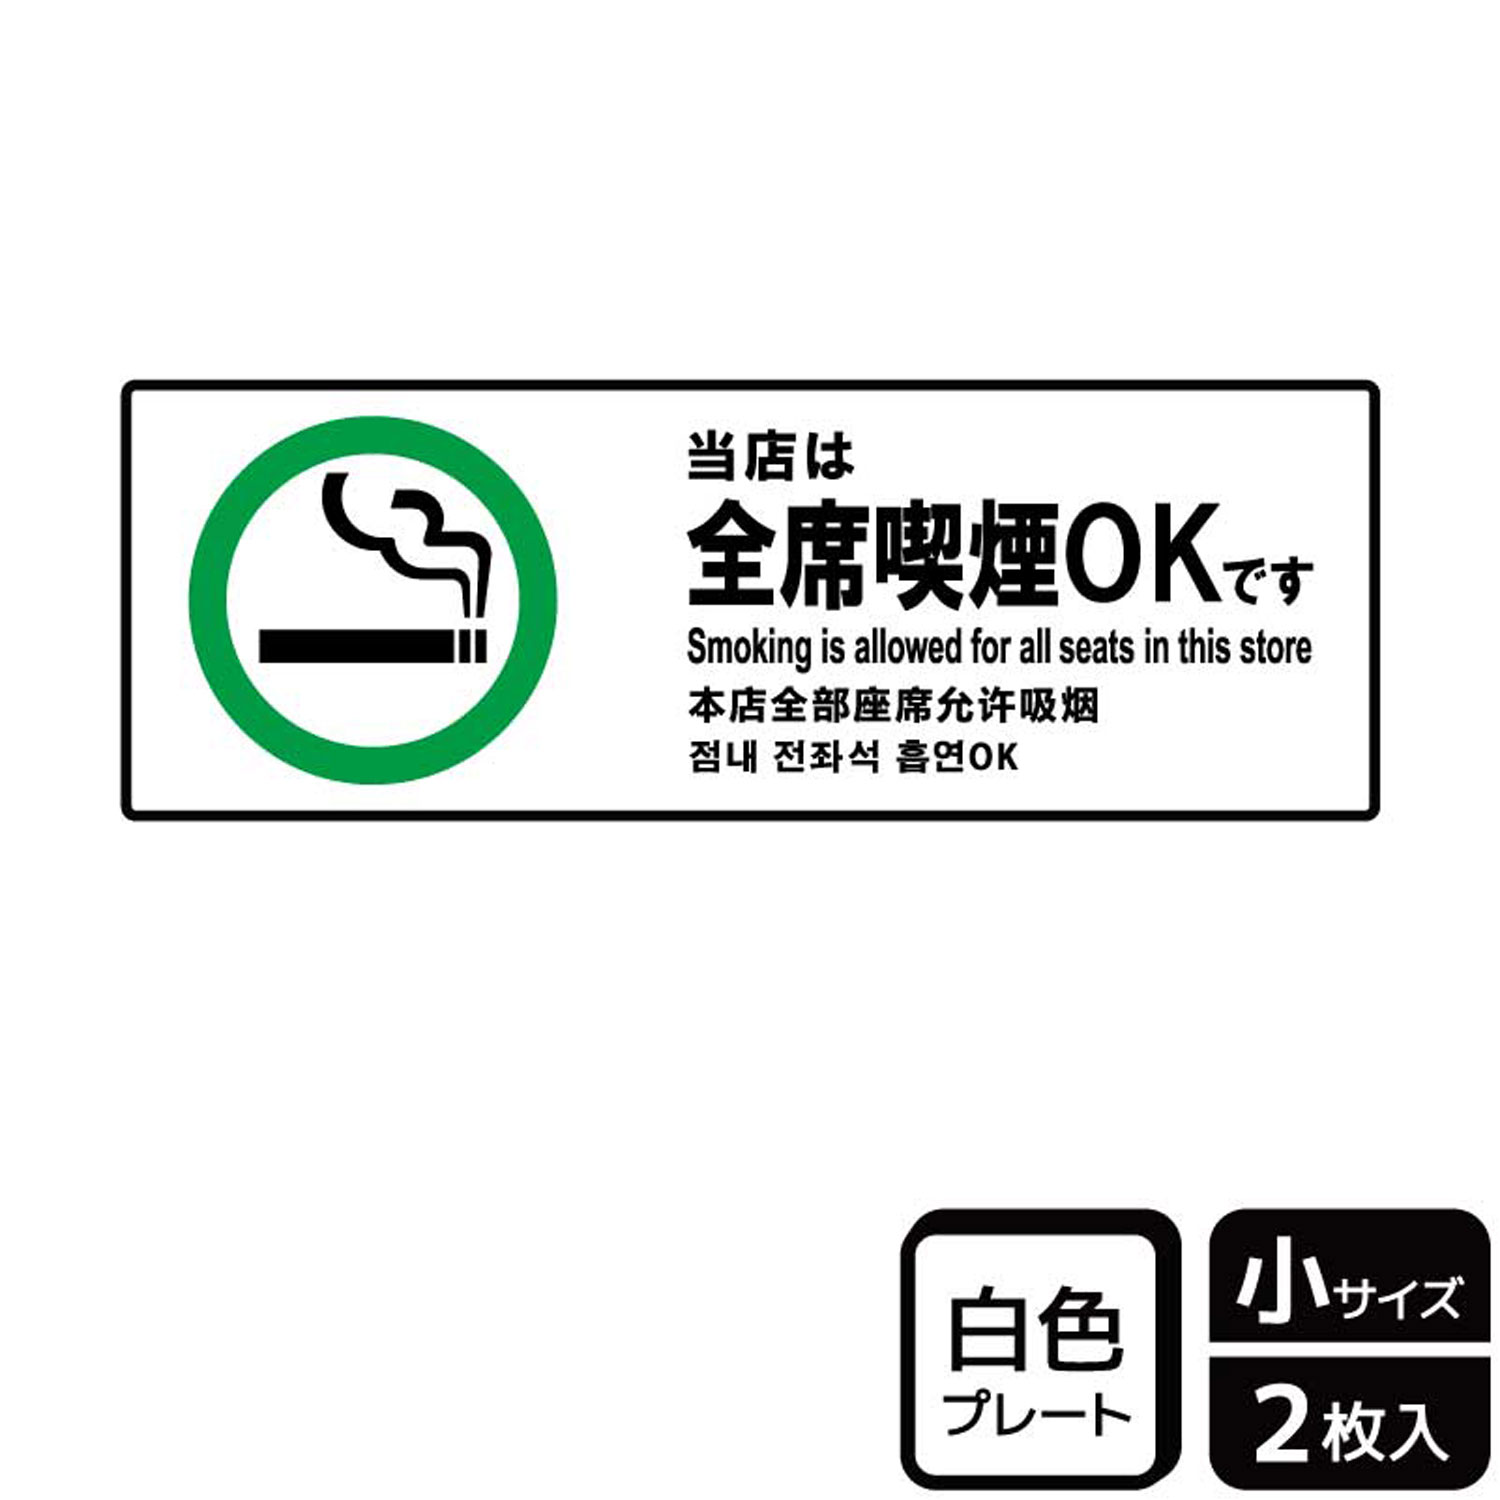 【1組】プレート KTK6026 当店全席喫煙OK 2枚入 KALBAS 看板 標識 ステッカー 案内 表示 00358743 プロステ